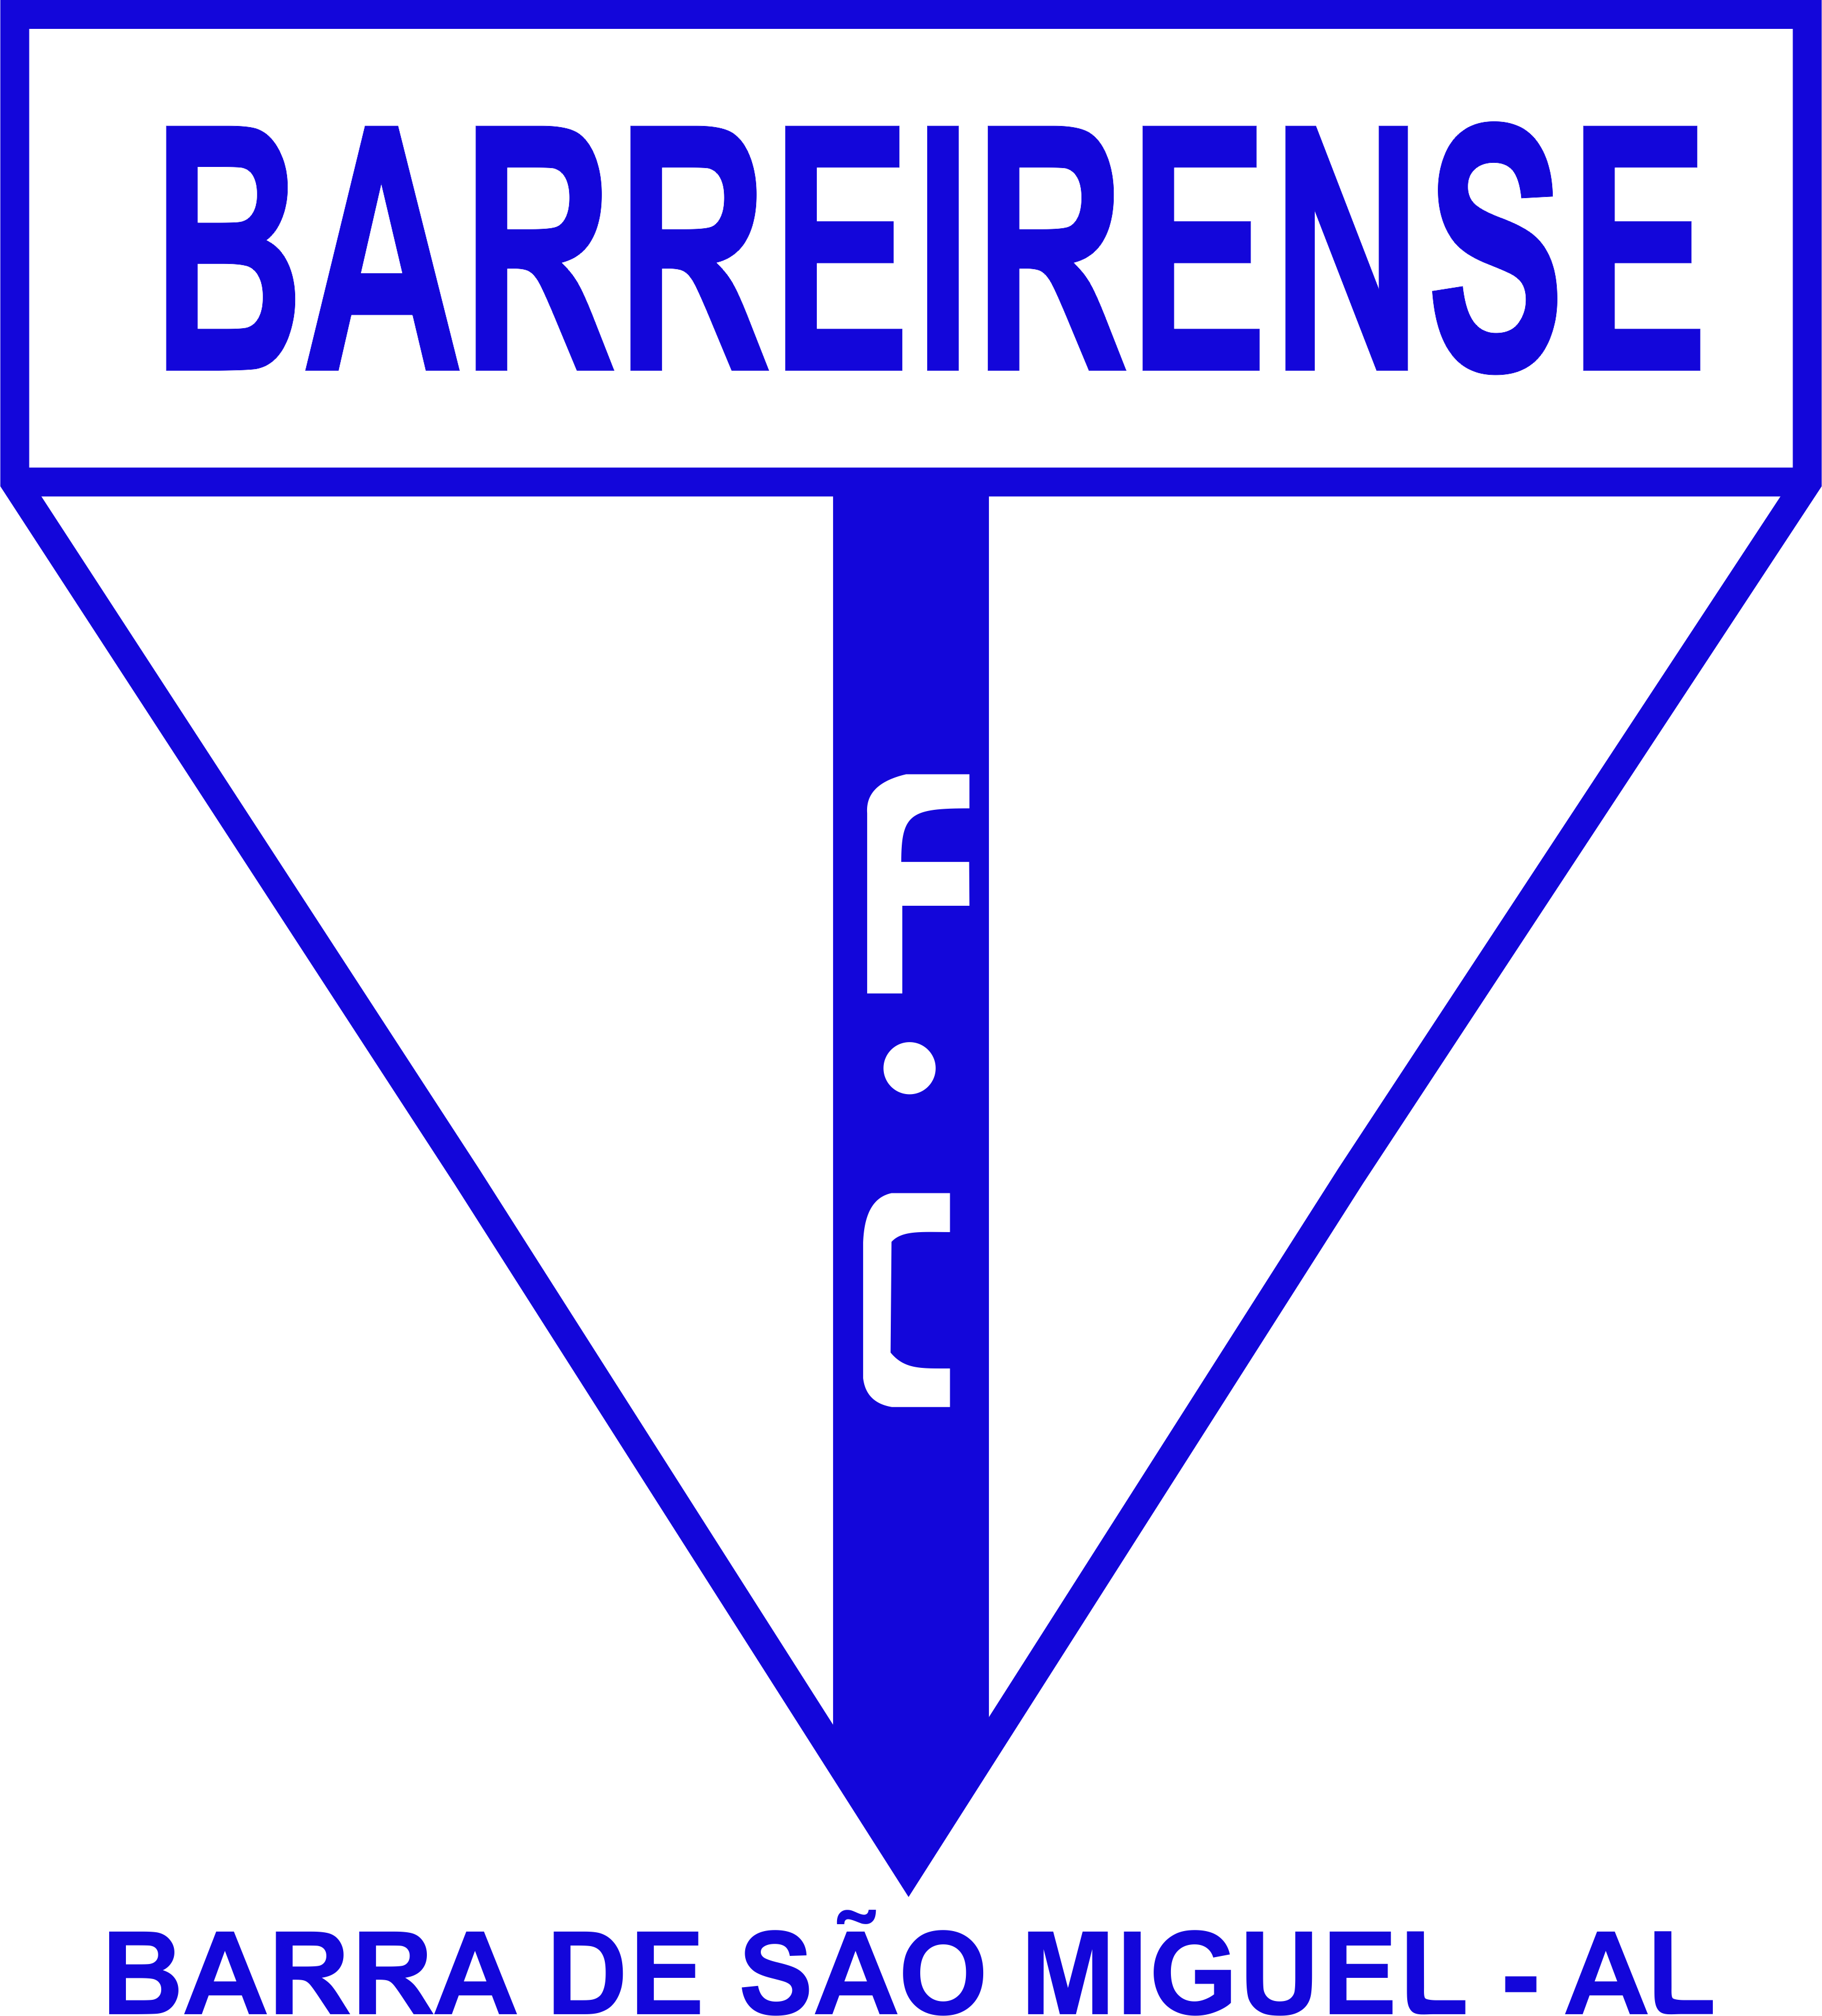 Barreirense